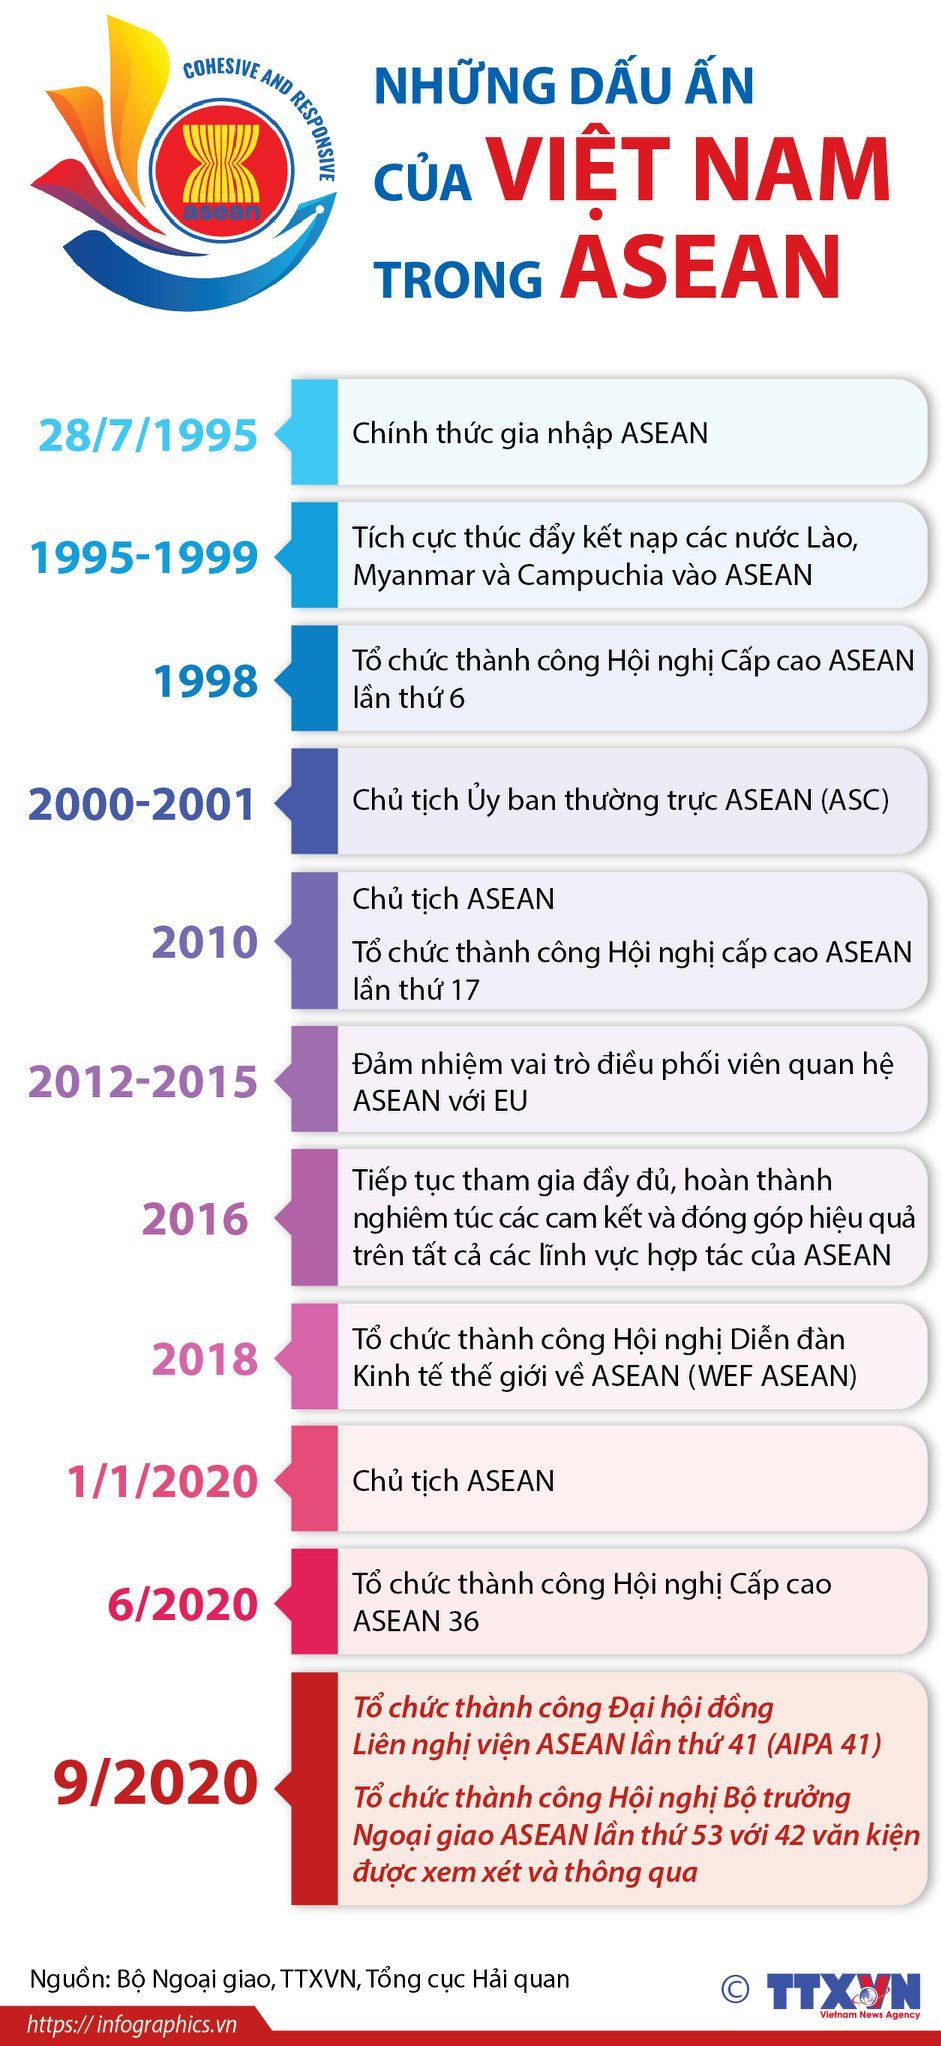 Việt Nam với những dấu ấn trong ASEAN